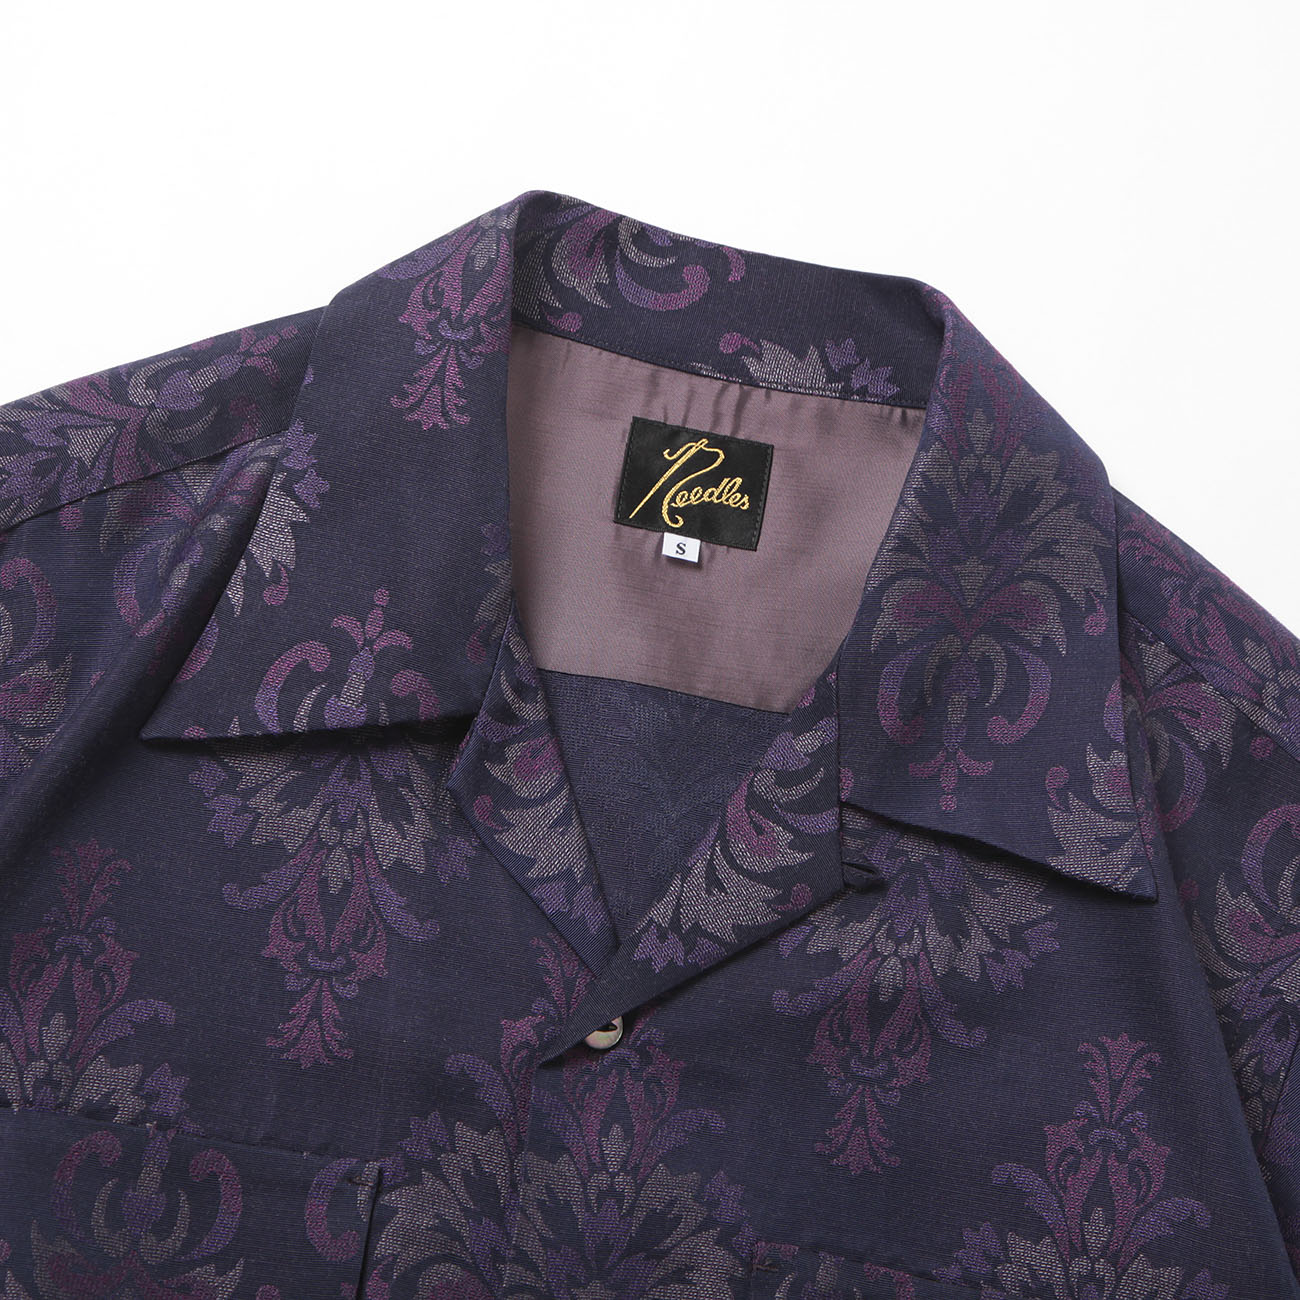 S/S Classic Shirt - CU/R/S ORNAMENT Jq. - Purple 襟元